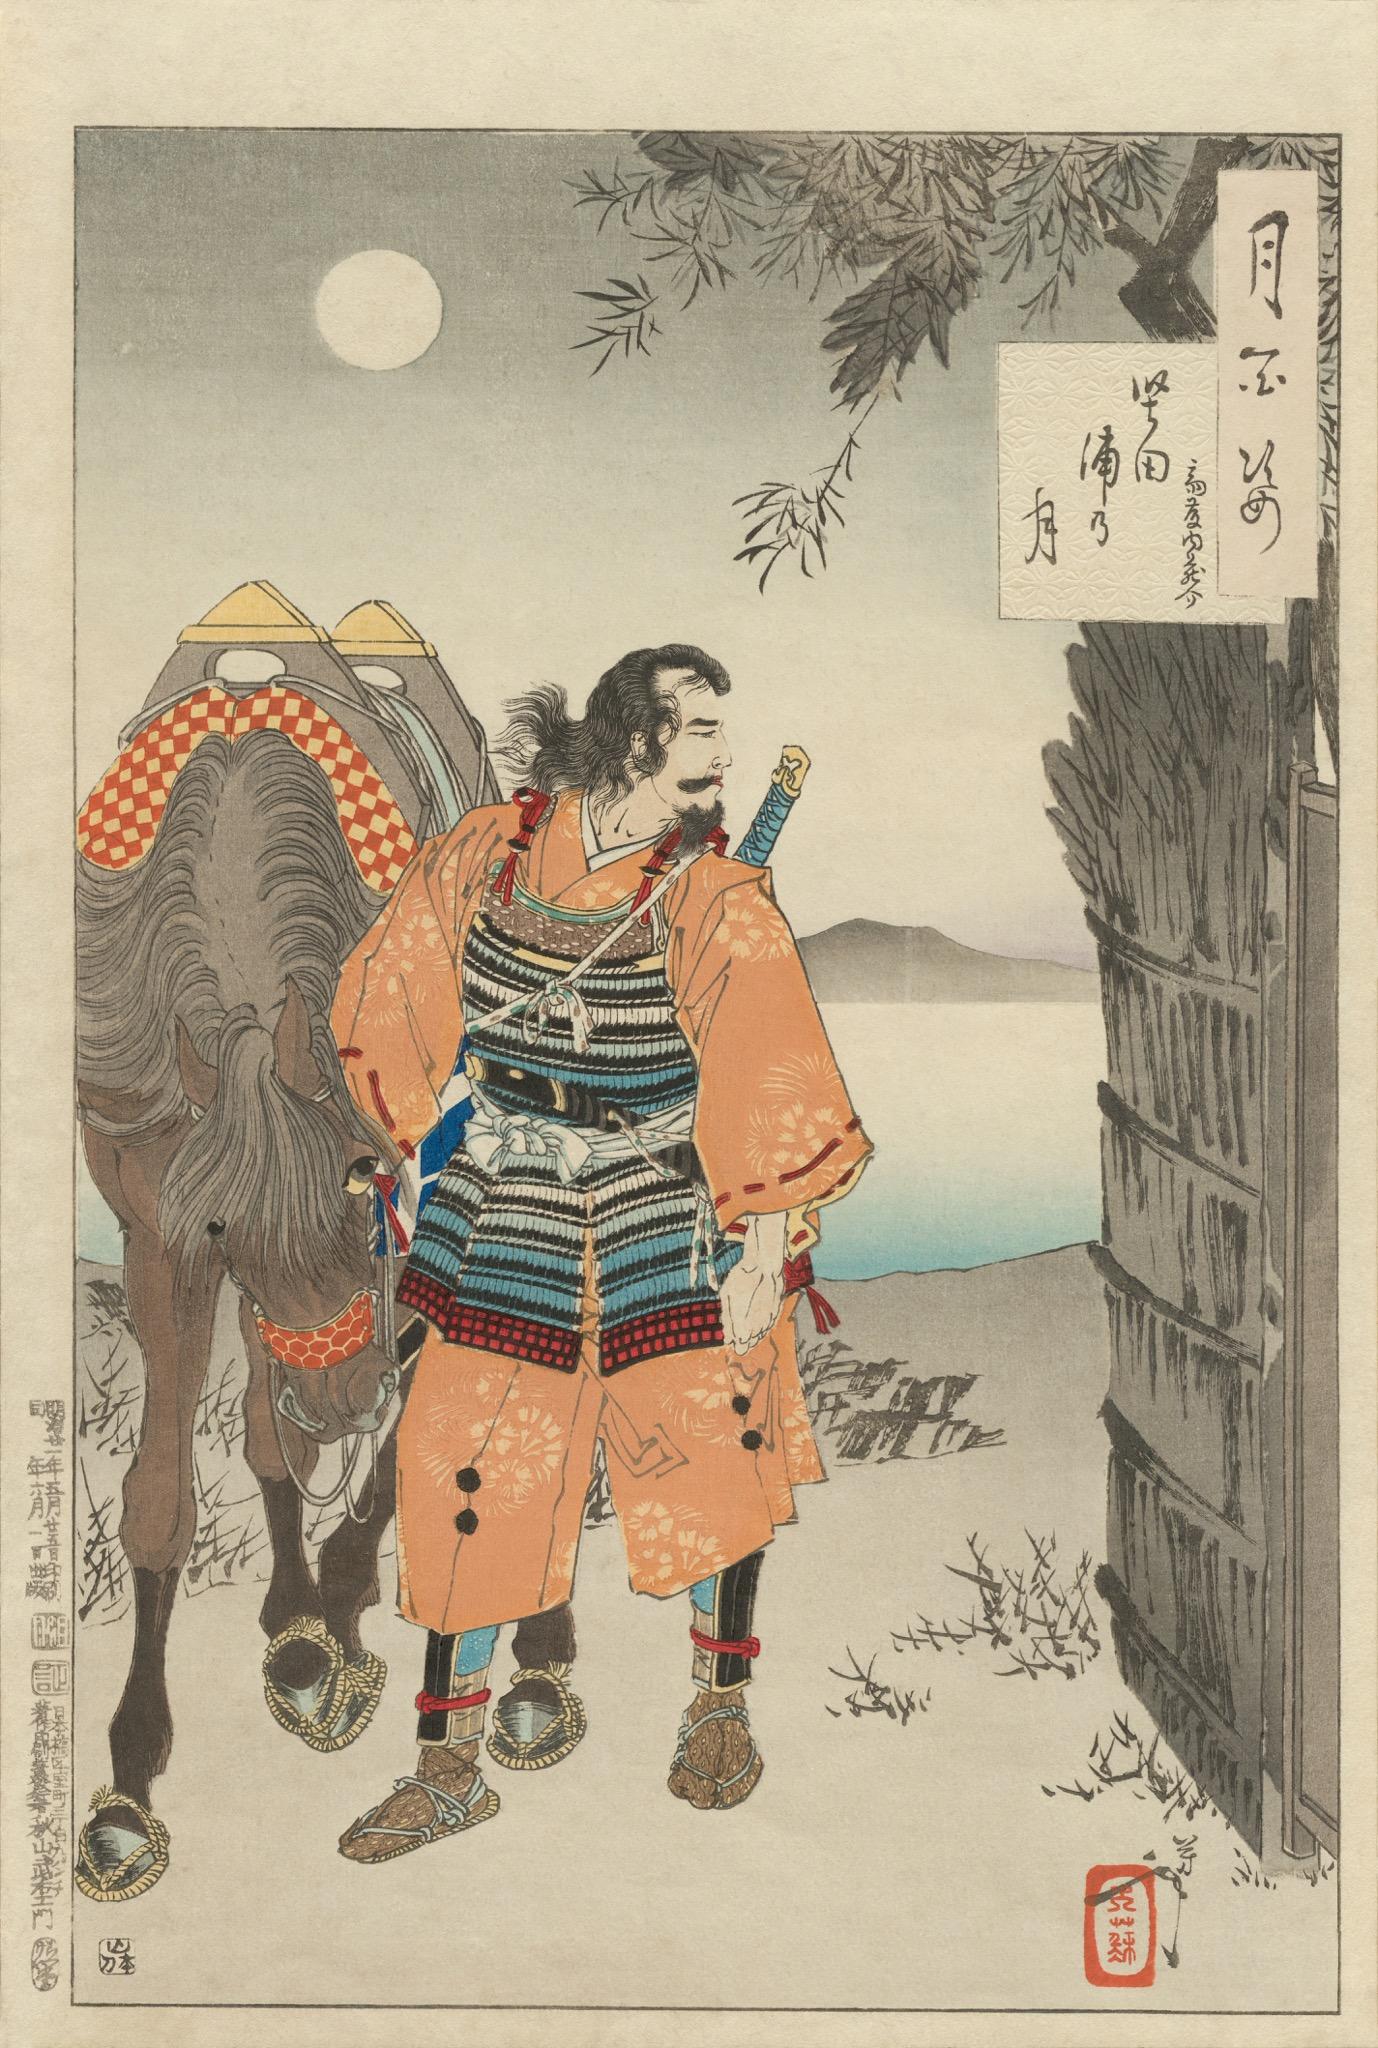 Dies ist ein Original Yoshitoshi Druck eines japanischen Meiji Ära Ukiyo-e (Holzschnitt) mit dem Titel 